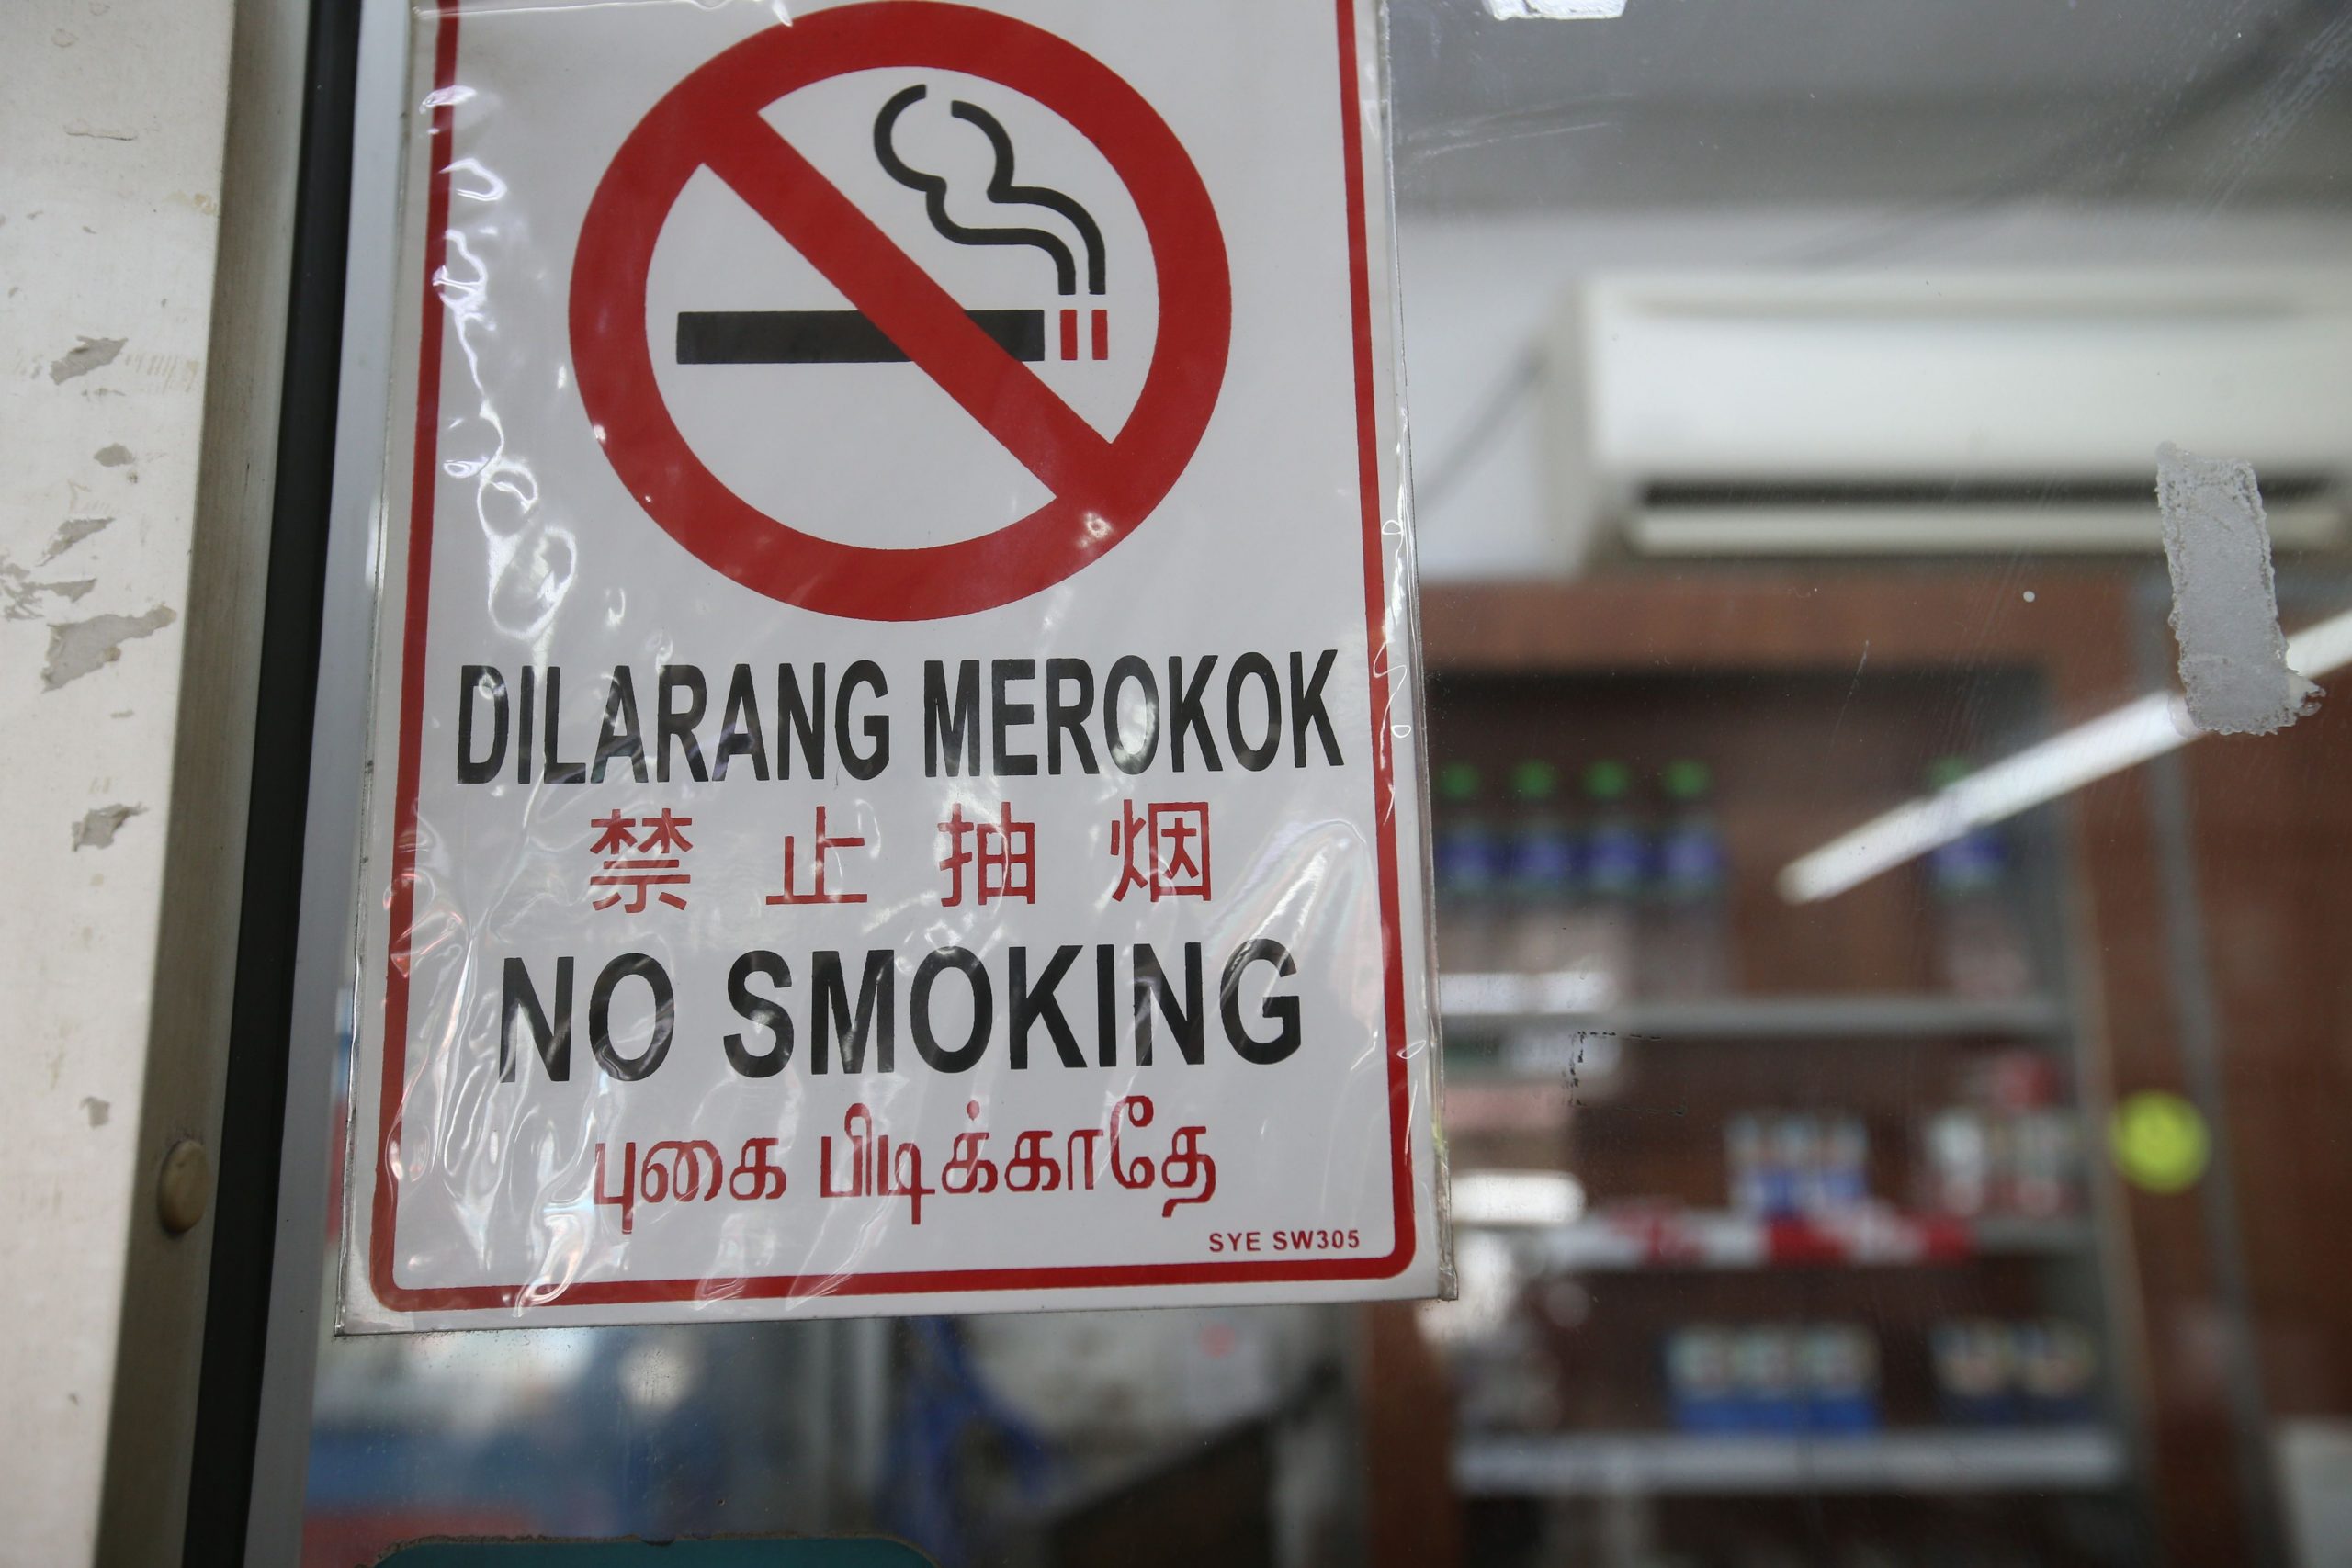 大都会/ME03头/政府将推介新法案-香烟及电子烟